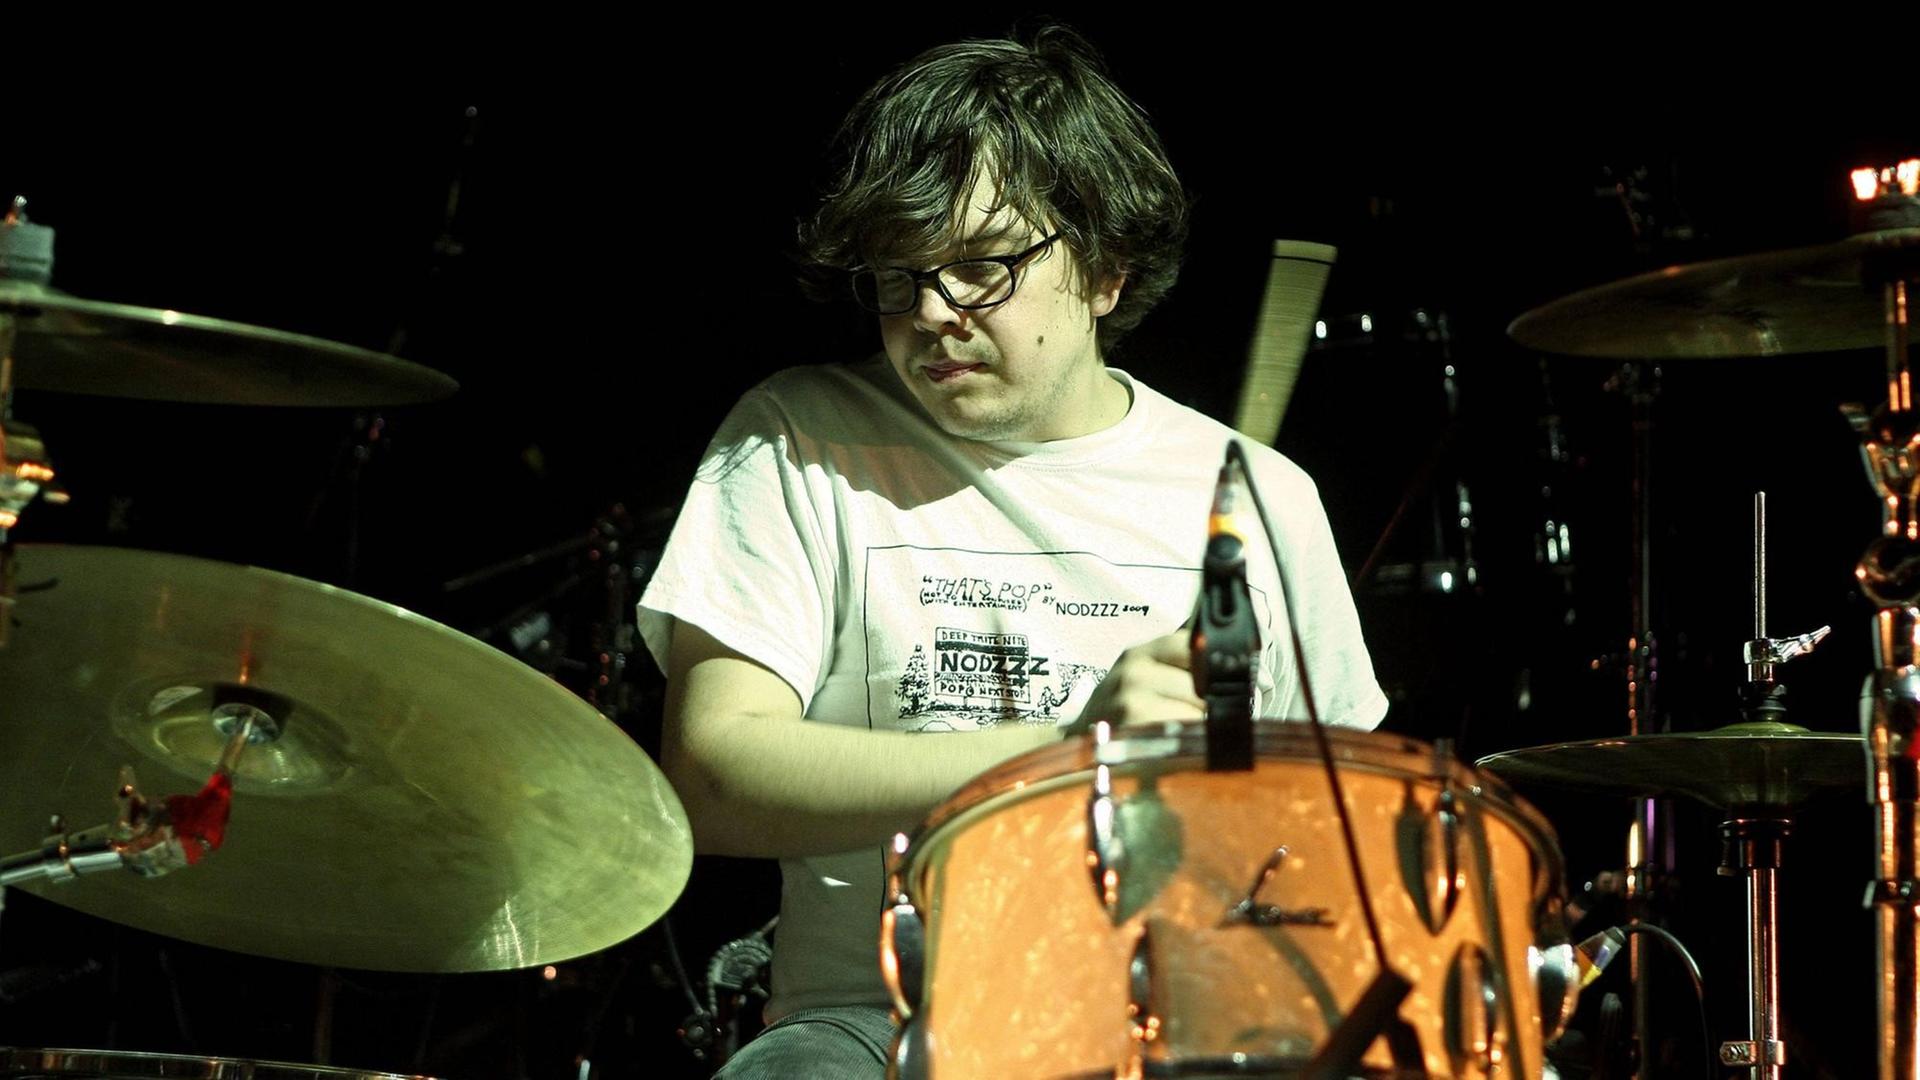 Schlagzeuger Rasmus Engler ( GER / Herrenmagazin ) während eines Konzertes am 29.10.2010 im Haus Auensee Leipzig.